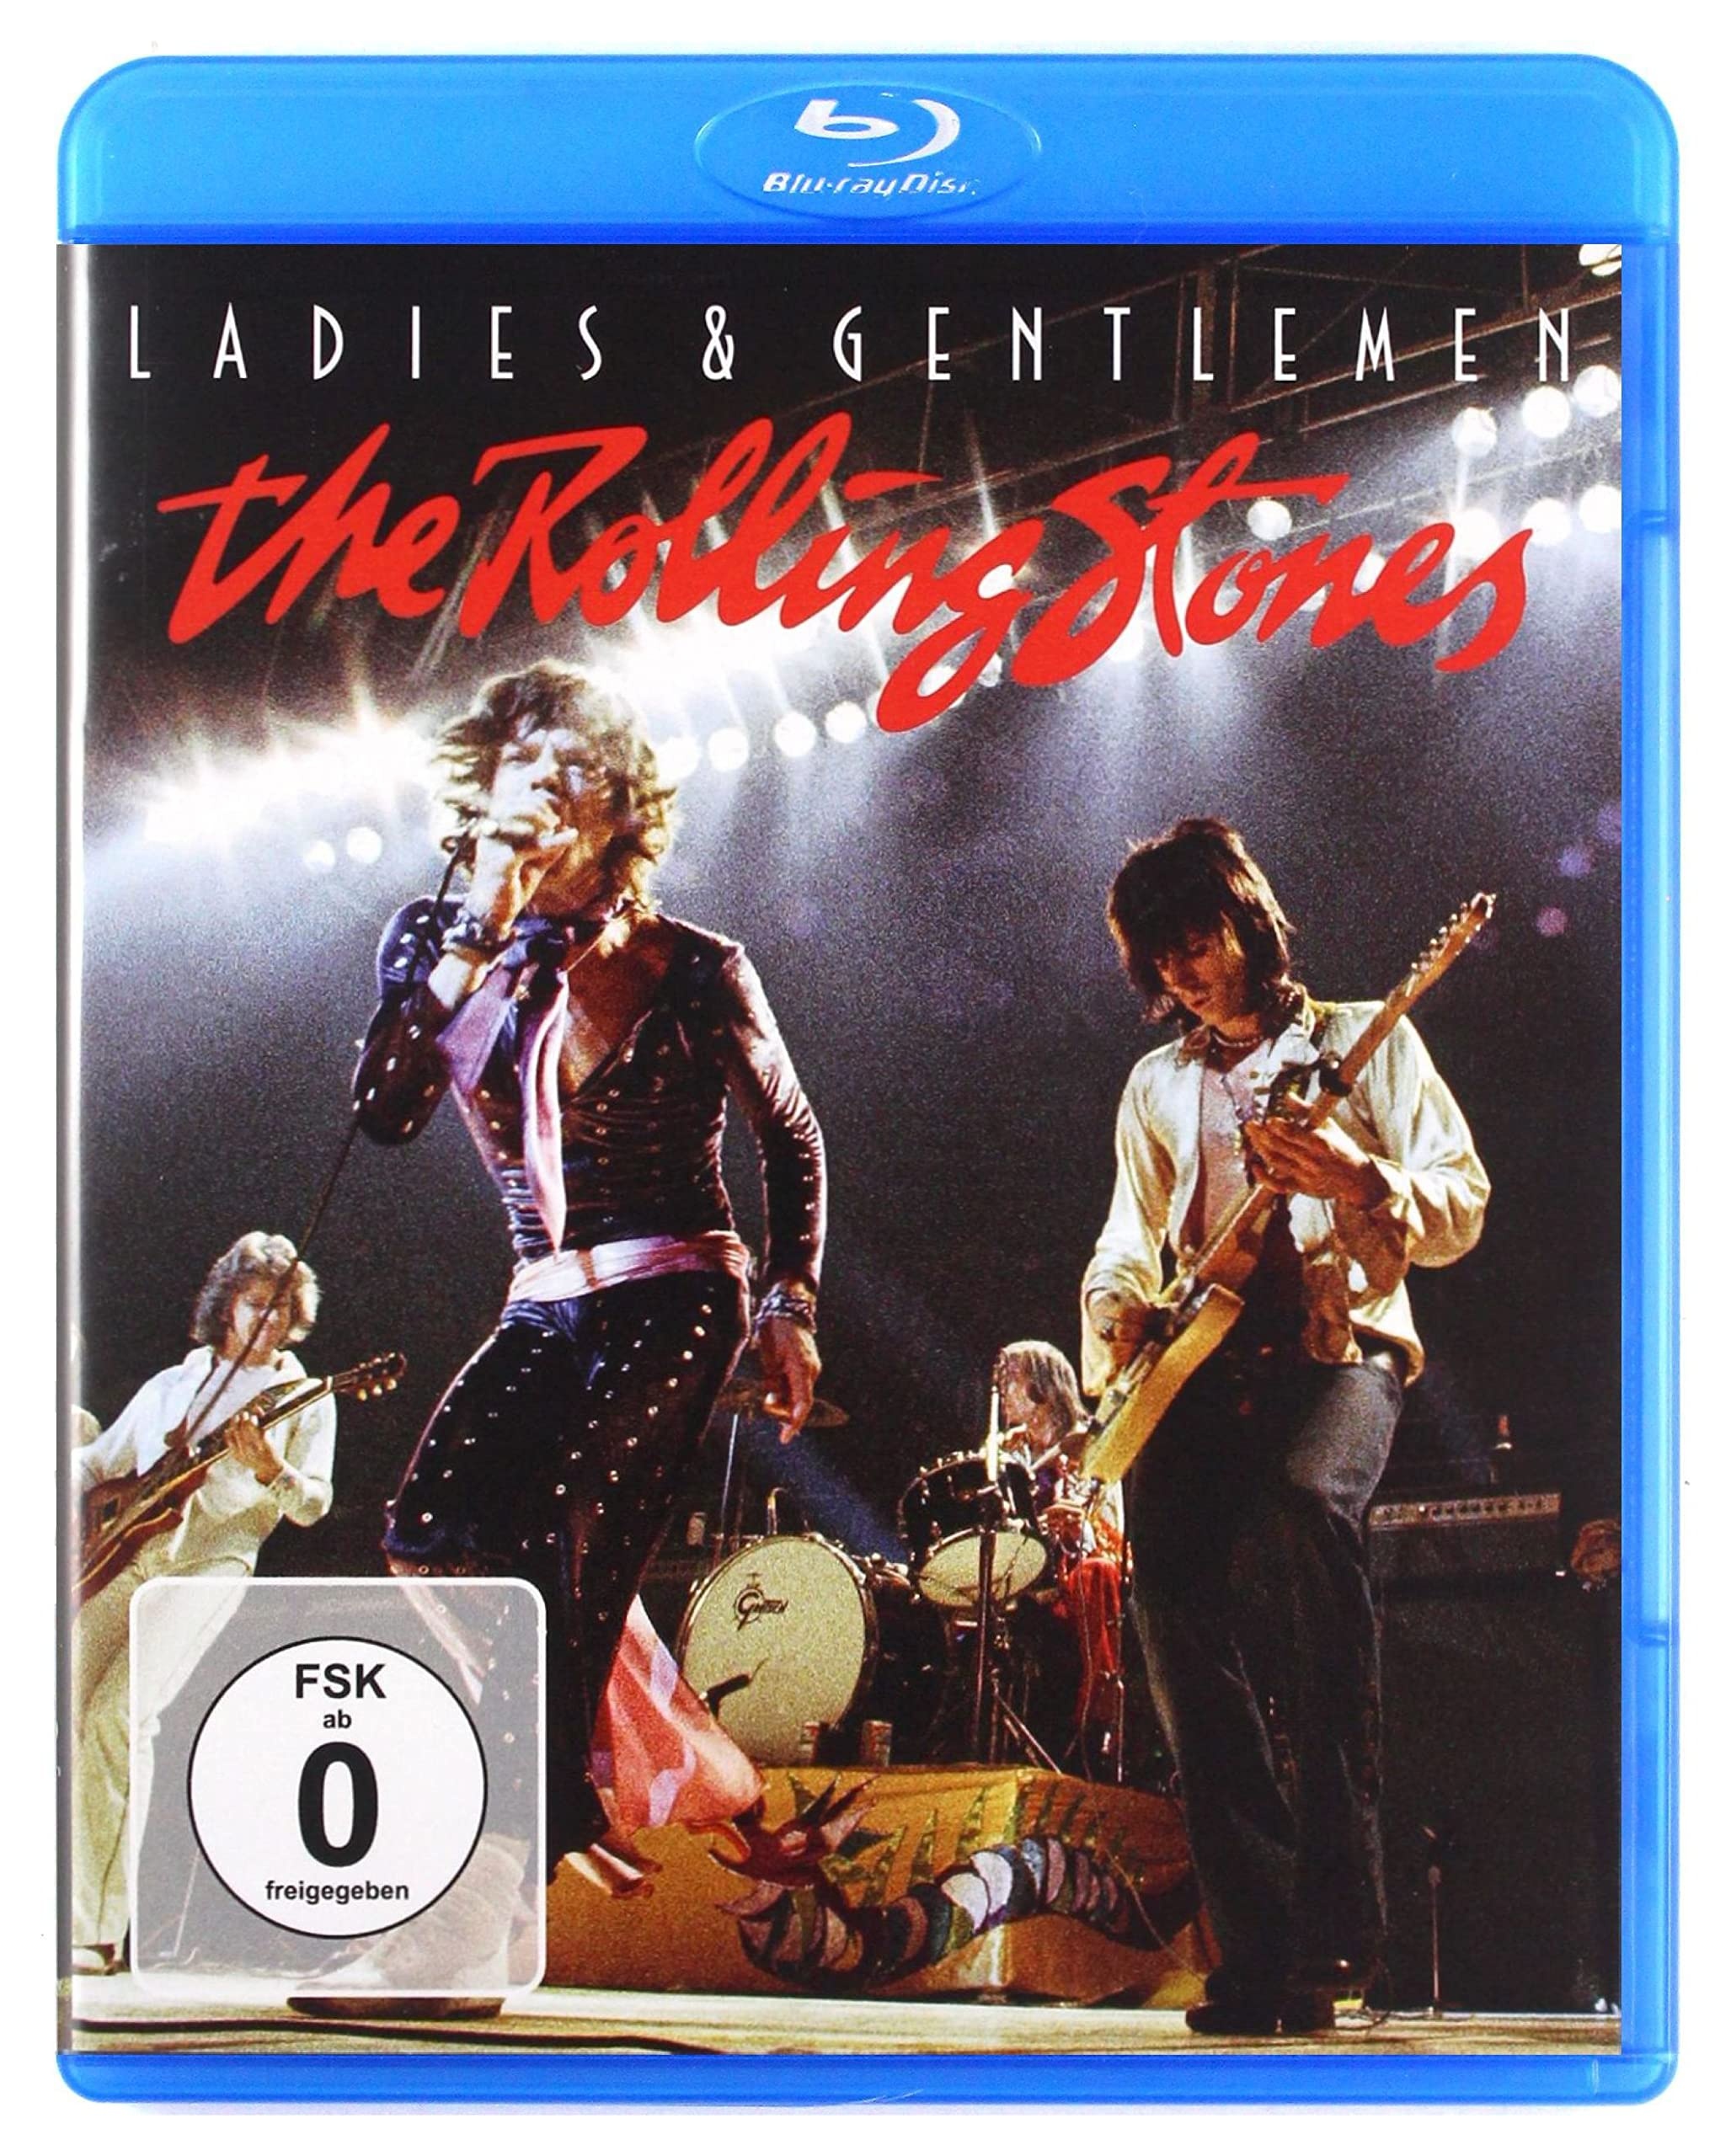 Rolling Stones - Ladies & Gentlemen: The Rolling Stones [Blu-ray] (Neu differenzbesteuert)